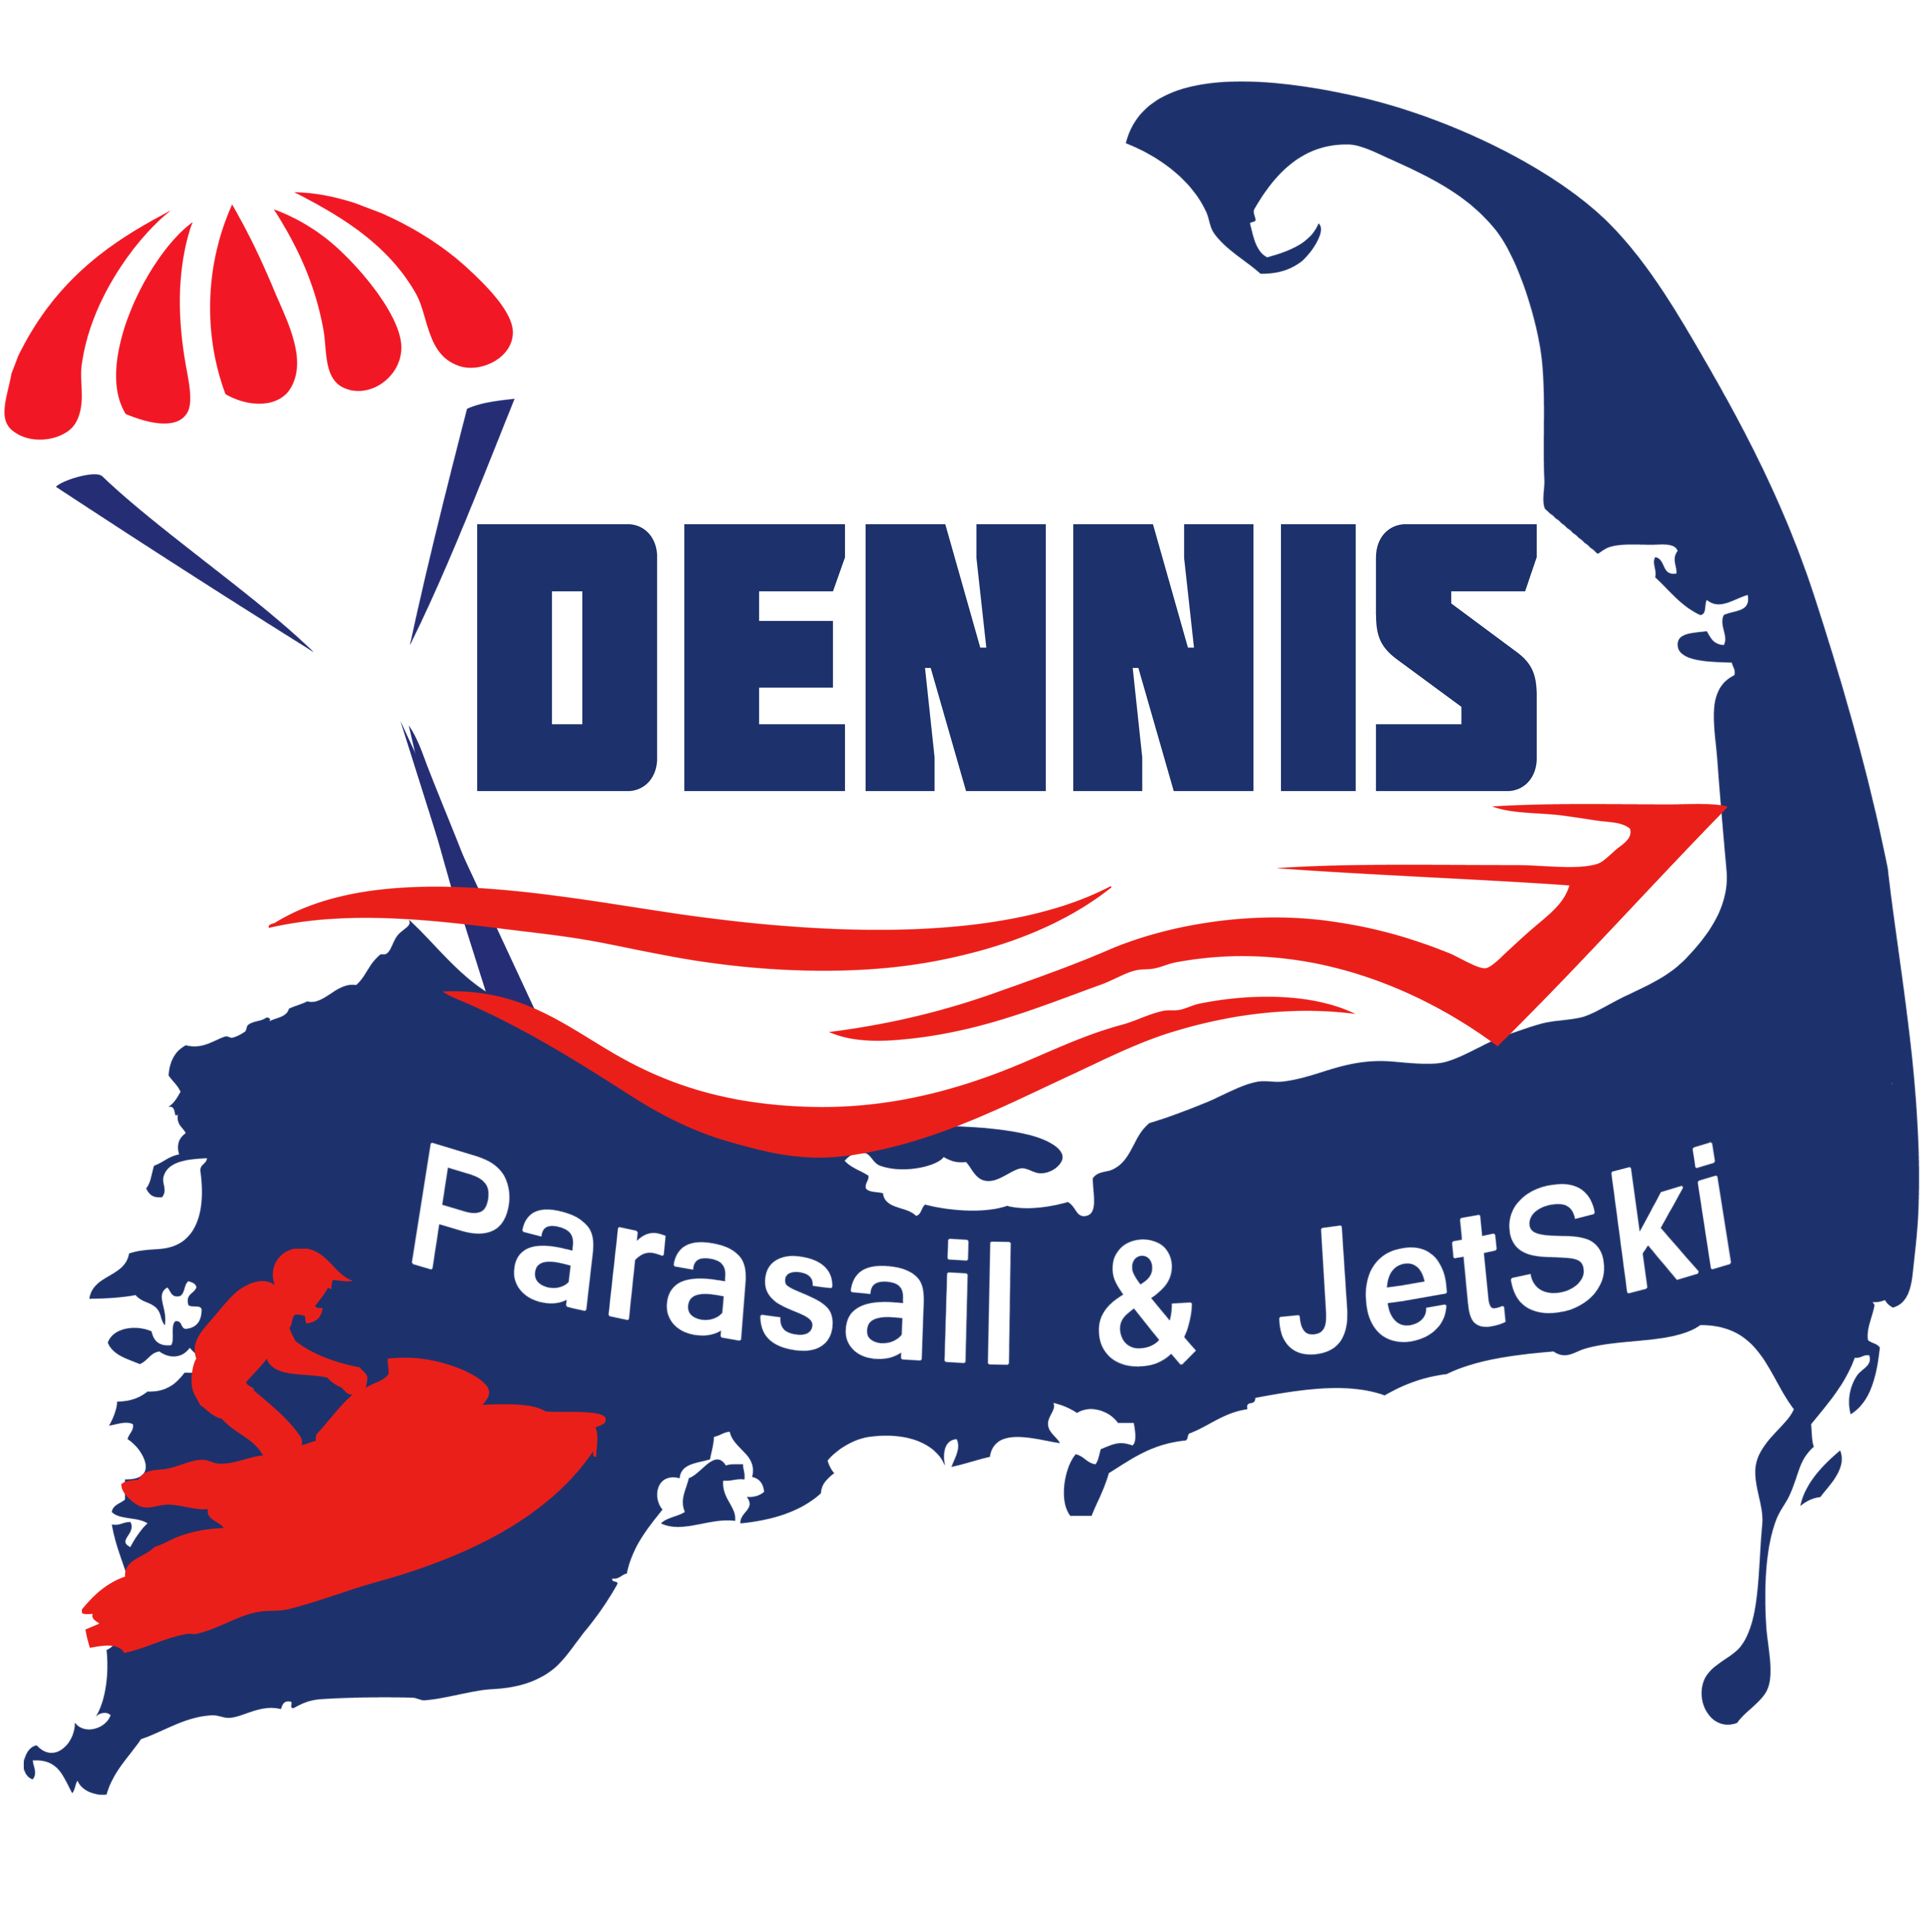 Dennis Parasail&Jetski